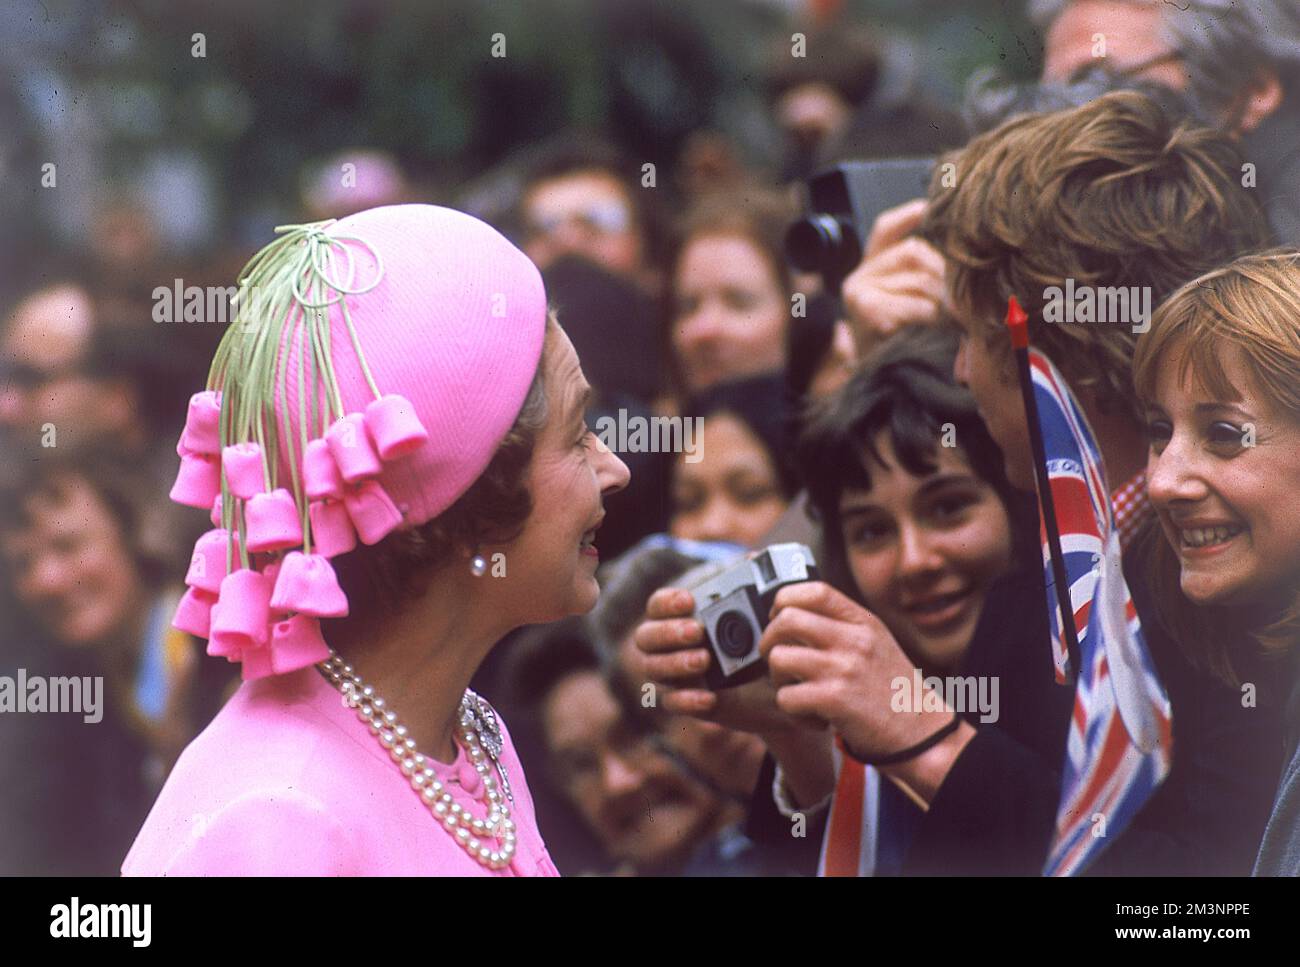 La reine Elizabeth II, une vision en sourires roses et discute avec des foules de bien-enthousiastes lors d'une promenade royale à Londres pour célébrer son Jubilé d'argent en 1977. Banque D'Images